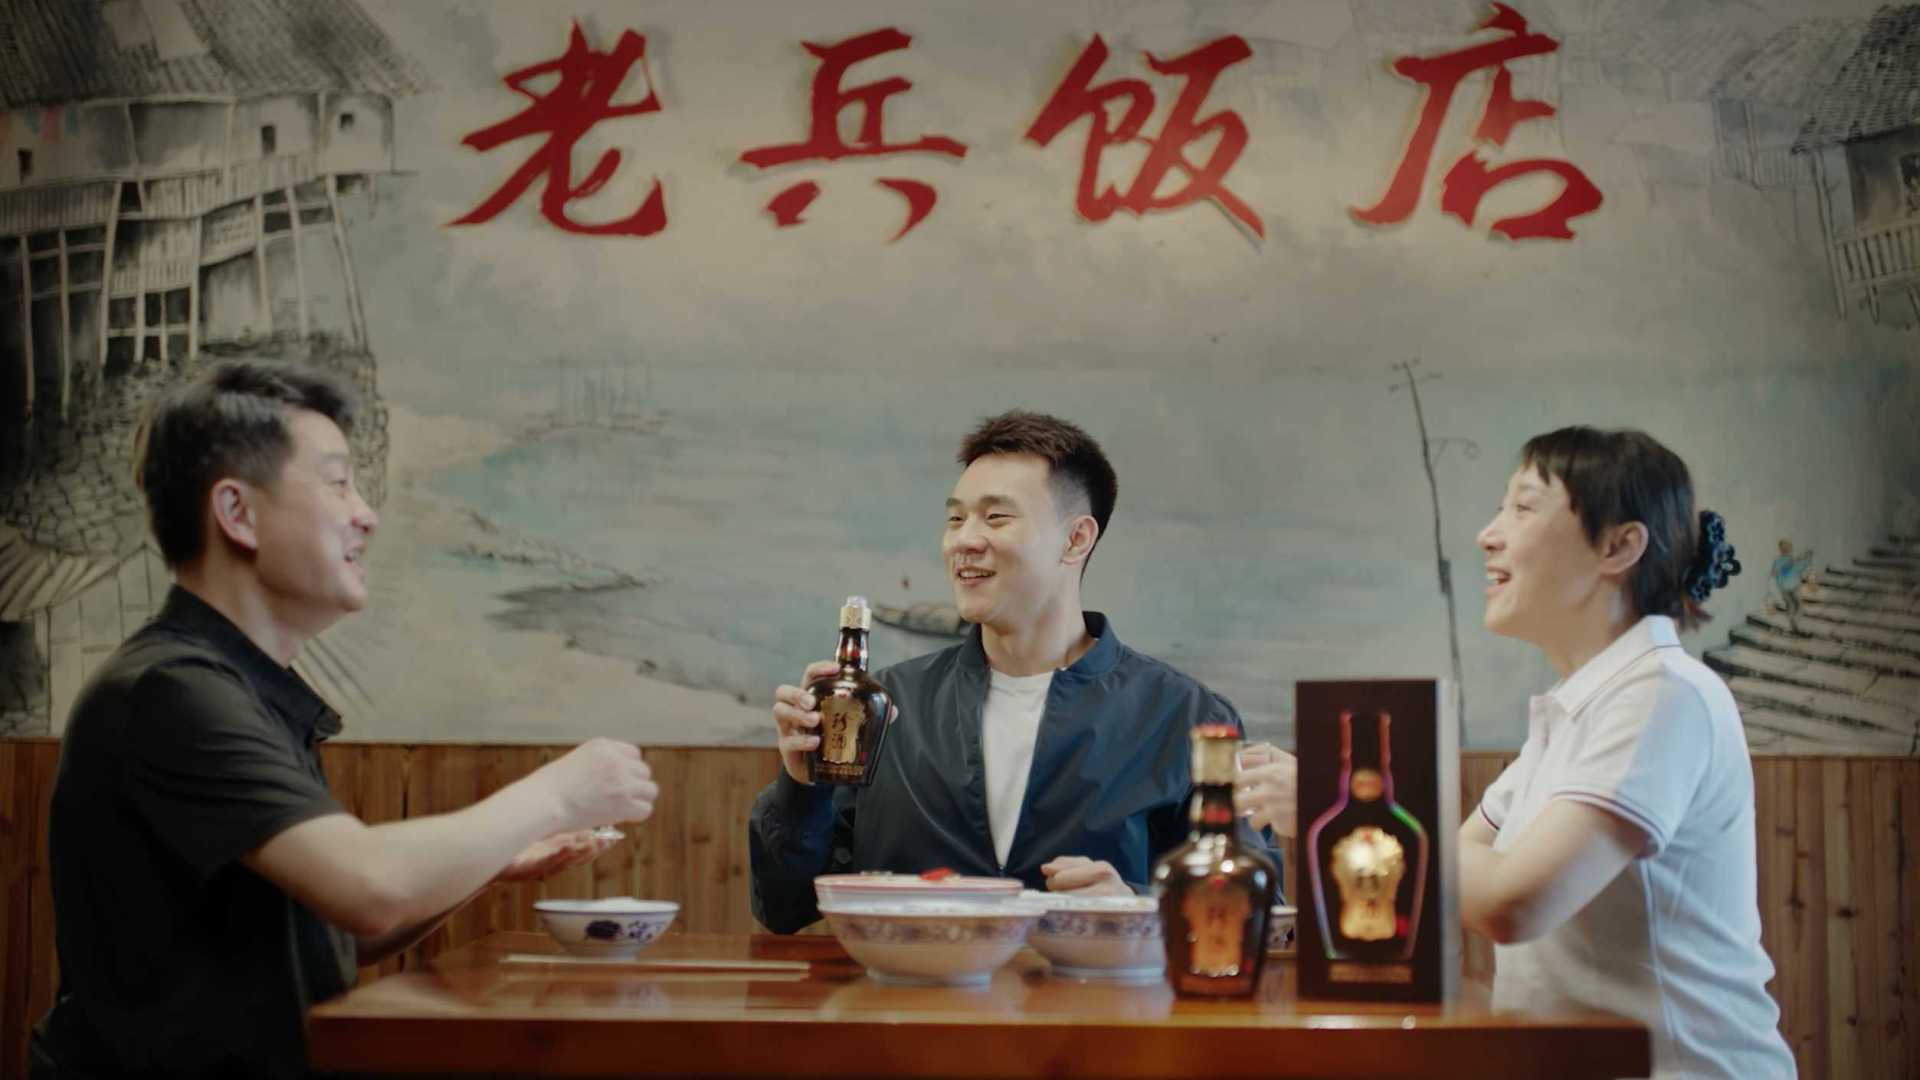 贵州珍酒-剧情广告之国际家庭日篇